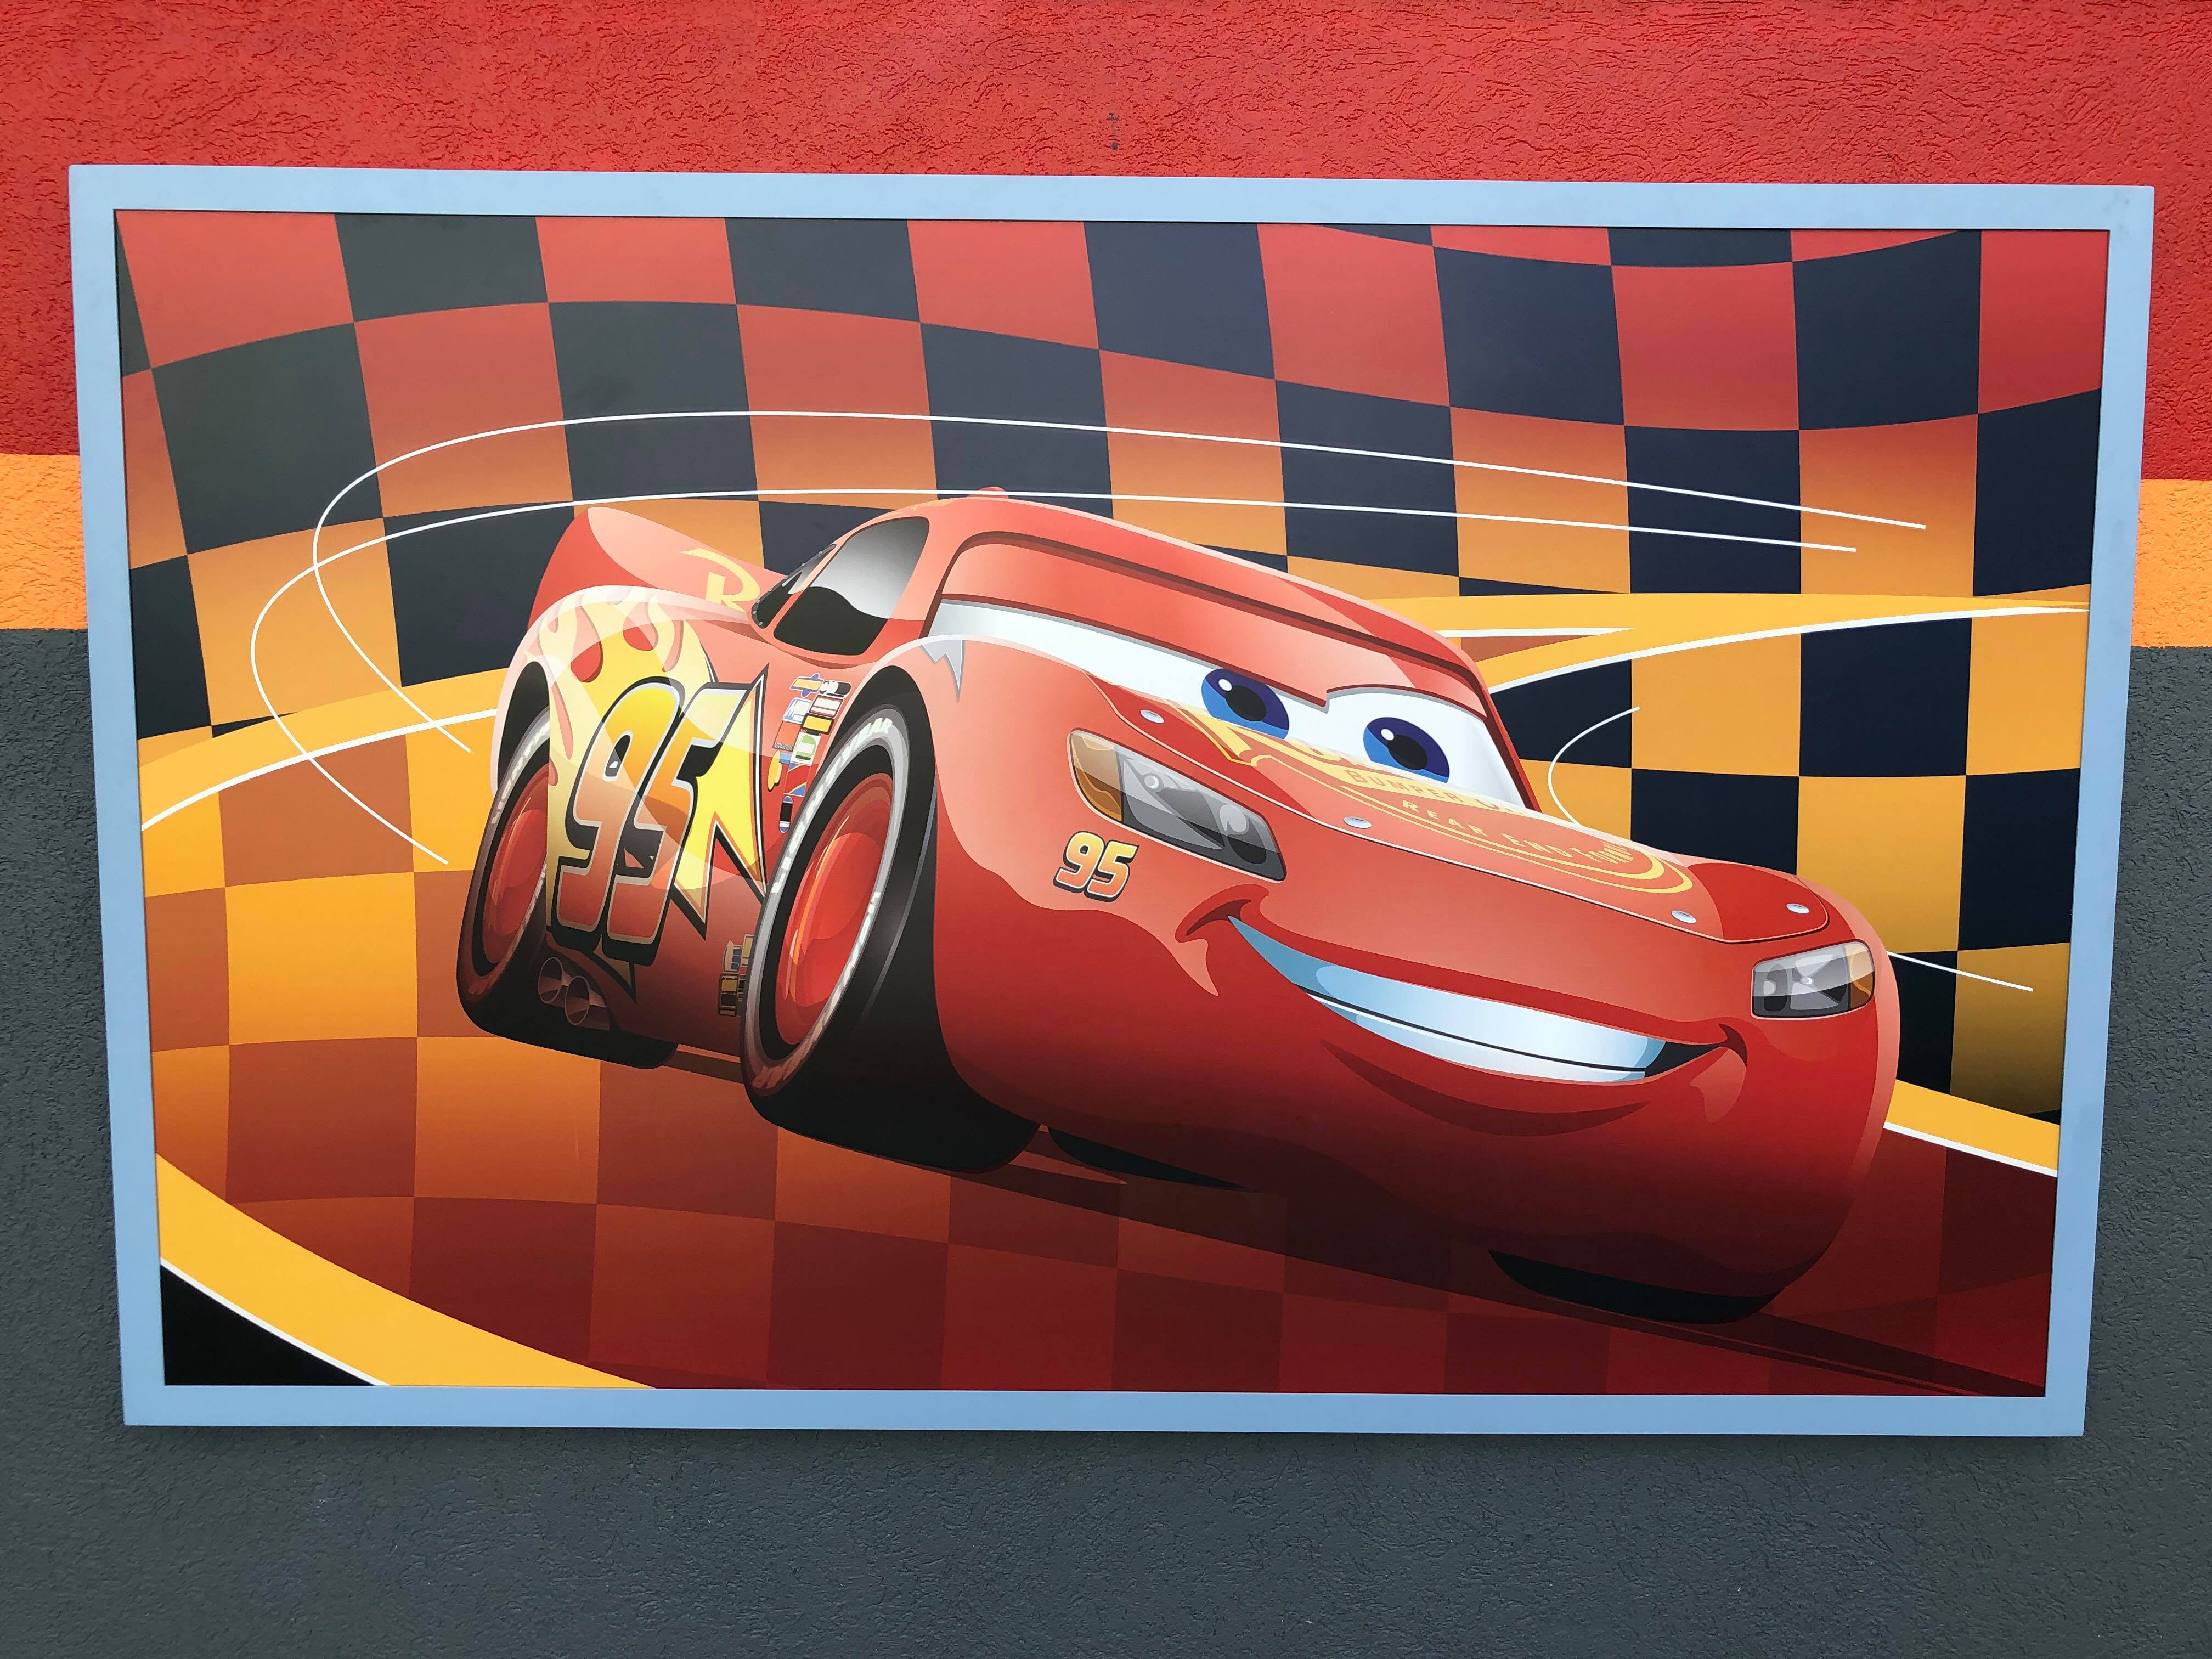 Lightning McQueen’s Racing Academy in Hollywood Studios